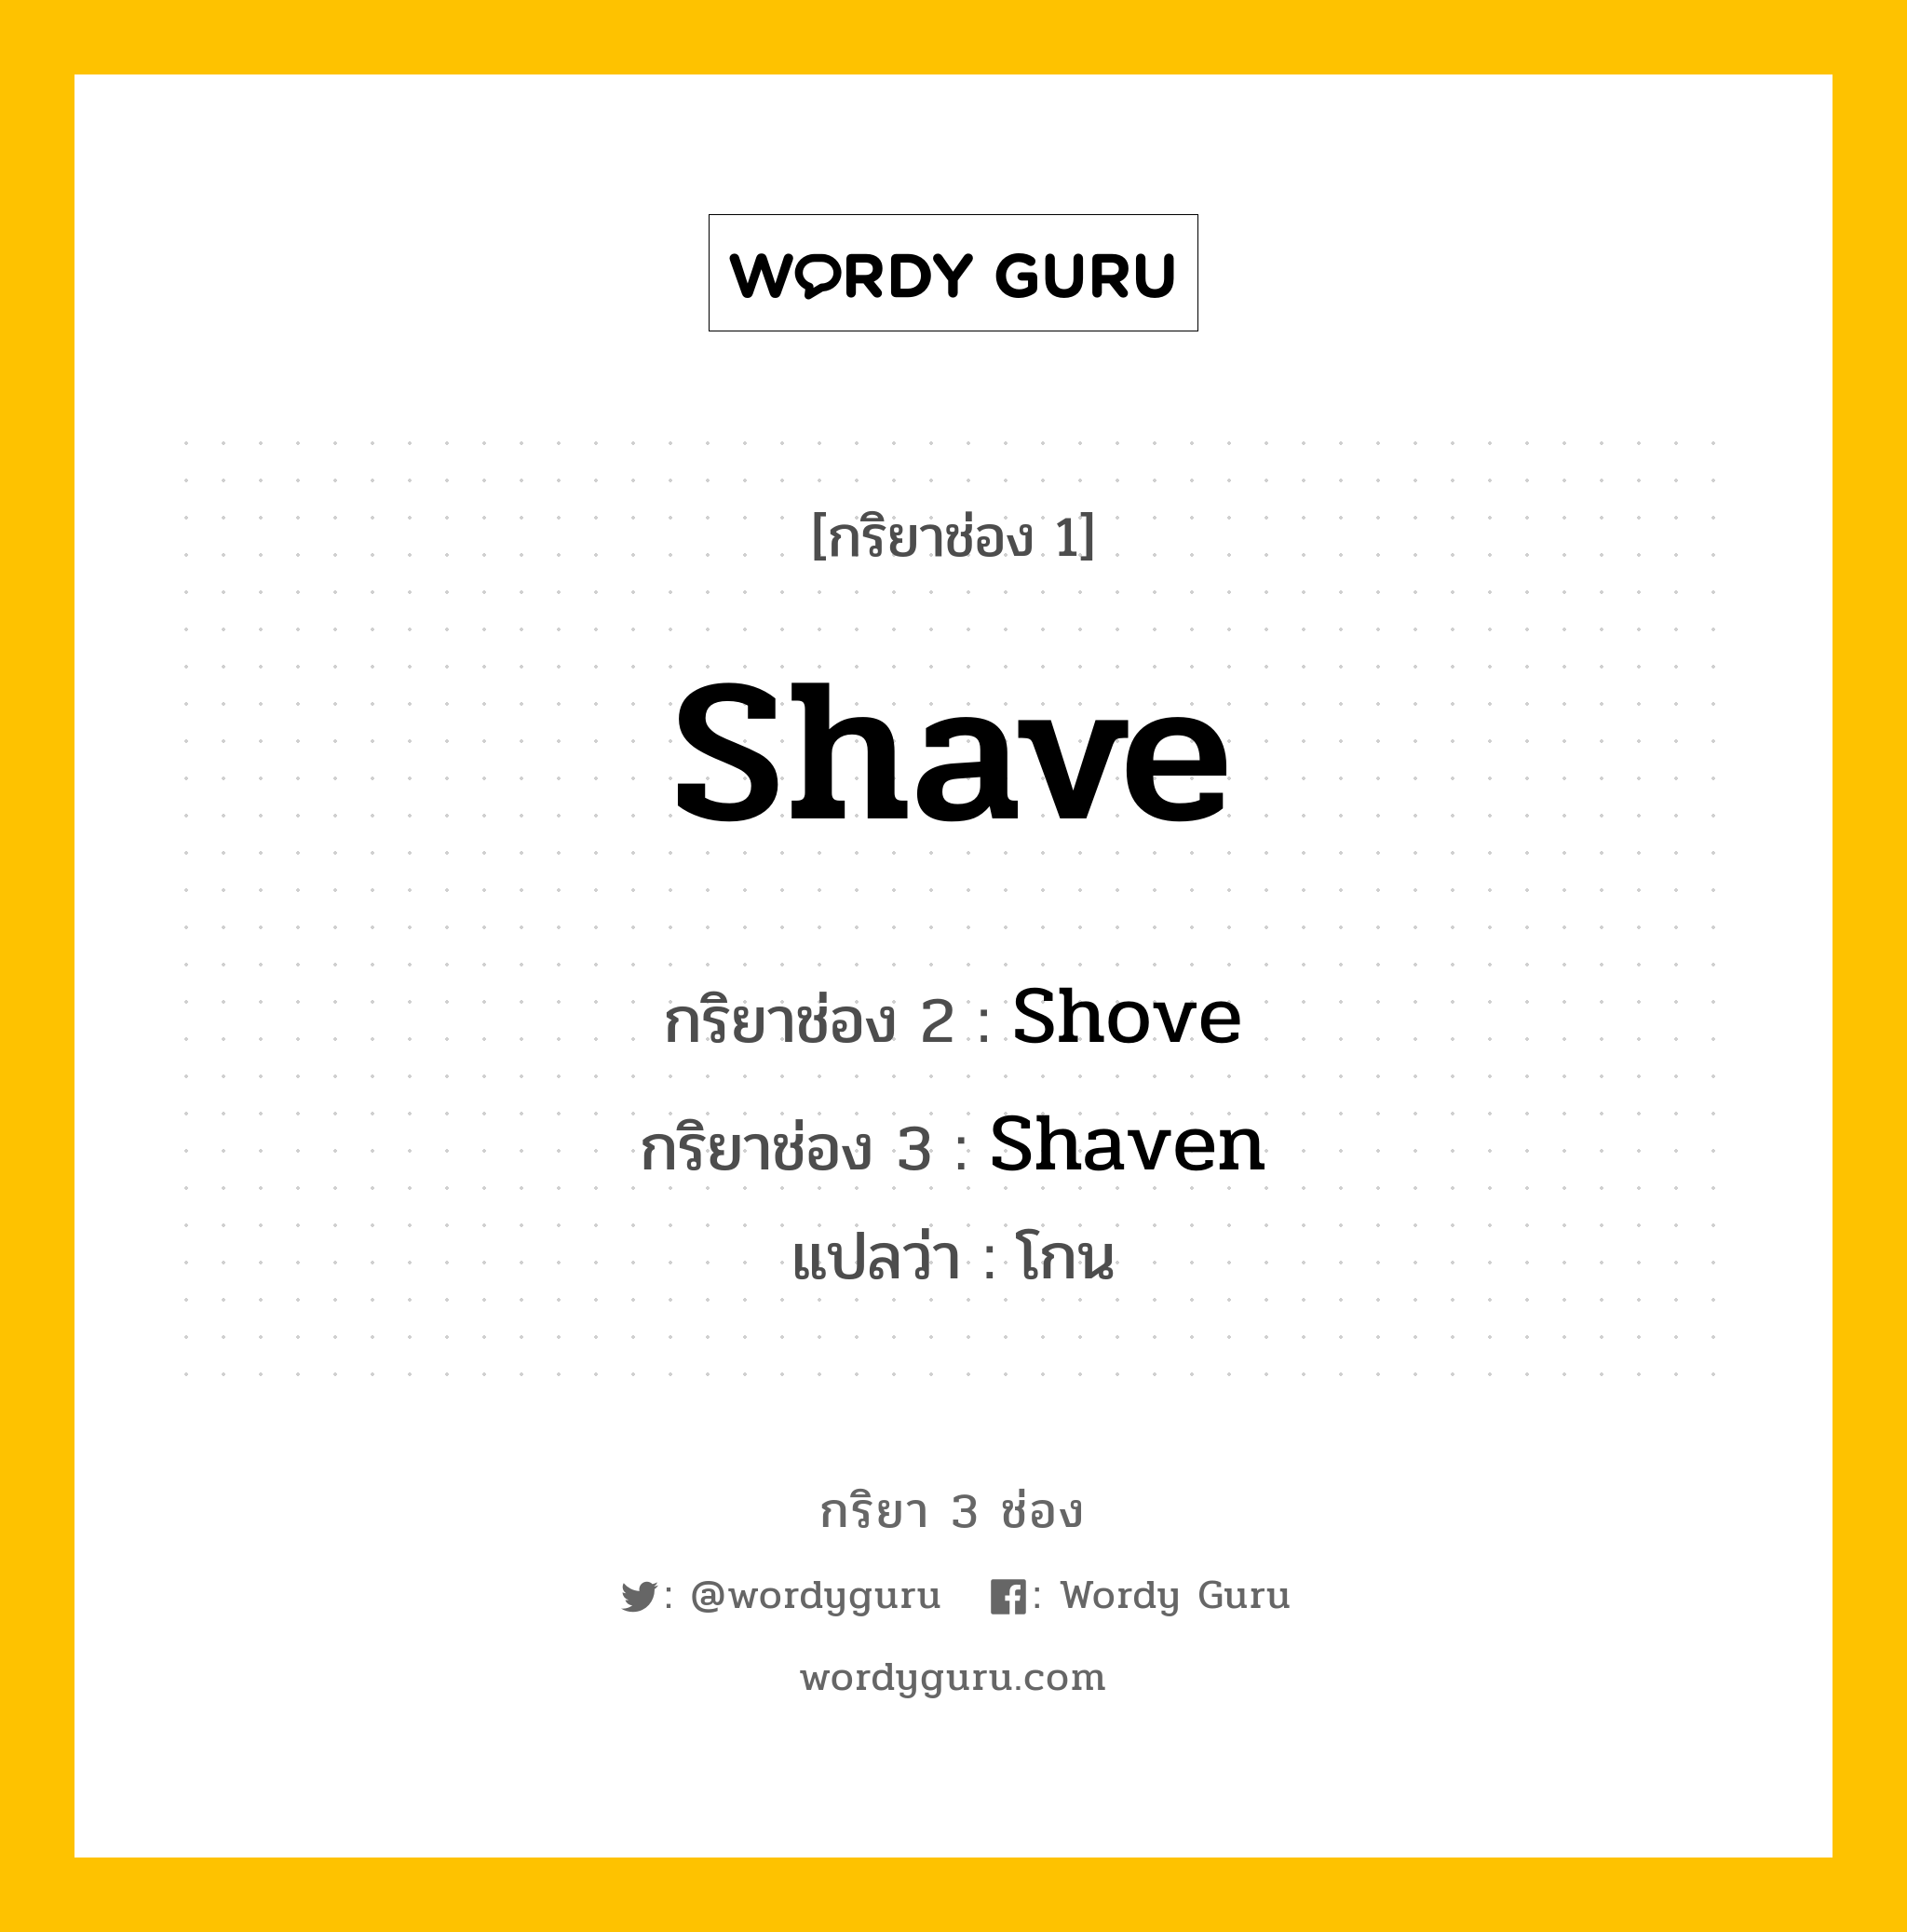 กริยา 3 ช่อง: Shave ช่อง 2 Shave ช่อง 3 คืออะไร, กริยาช่อง 1 Shave กริยาช่อง 2 Shove กริยาช่อง 3 Shaven แปลว่า โกน มีหลายแบบ y หมวด Irregular Verb